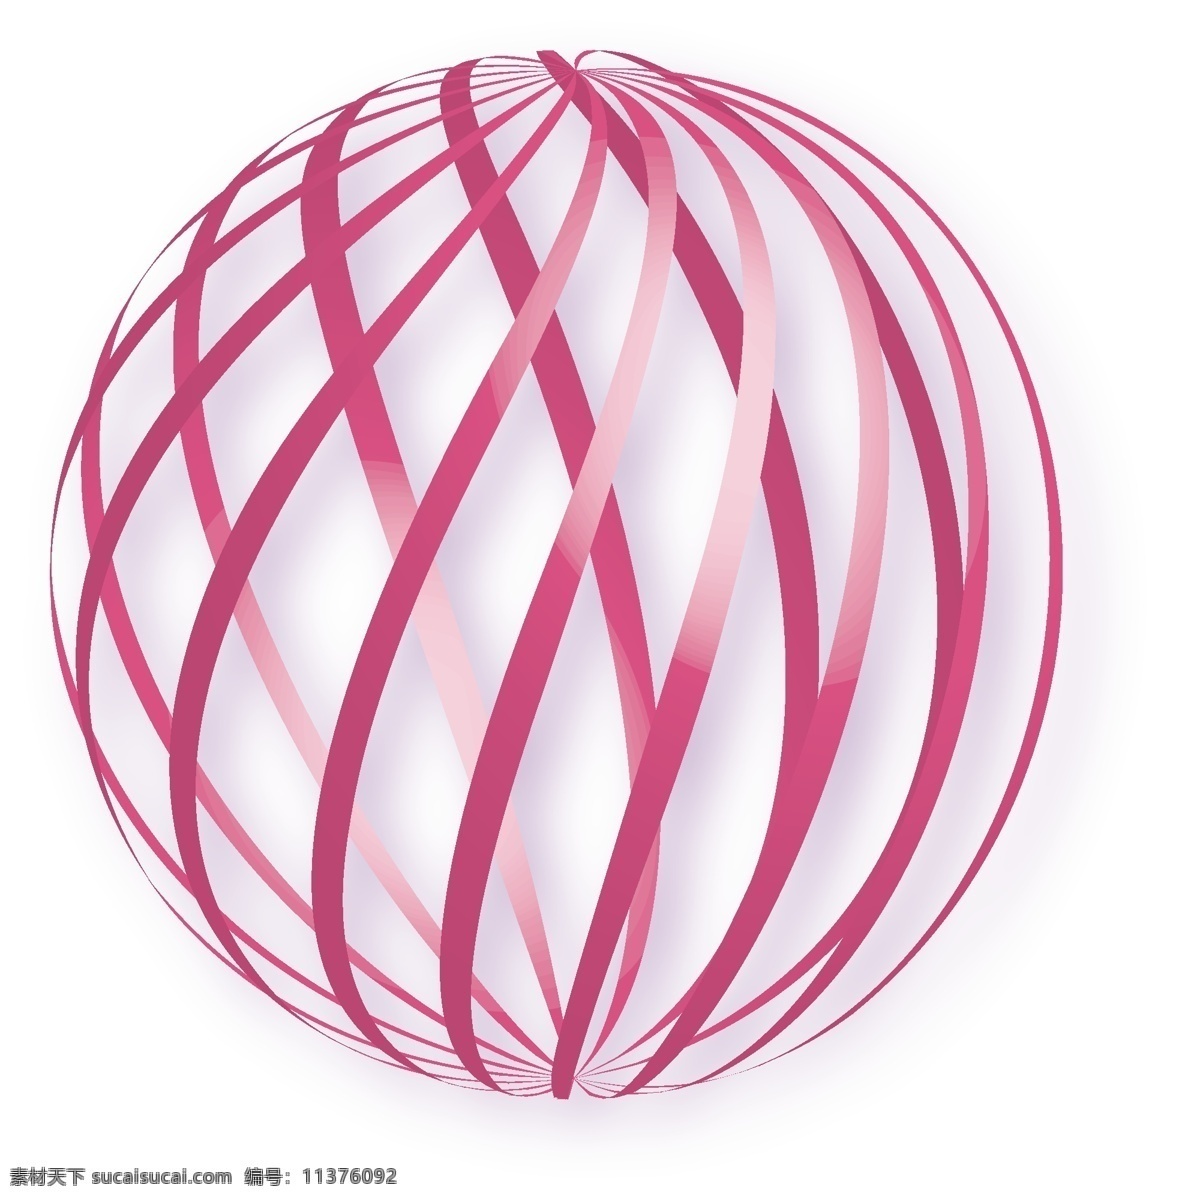 透明球状 透明球体 线 渐变 缤纷 贺彩 科技 圆圈 光线 转变 扭曲 斜线 球球 圆形 球状 3d设计